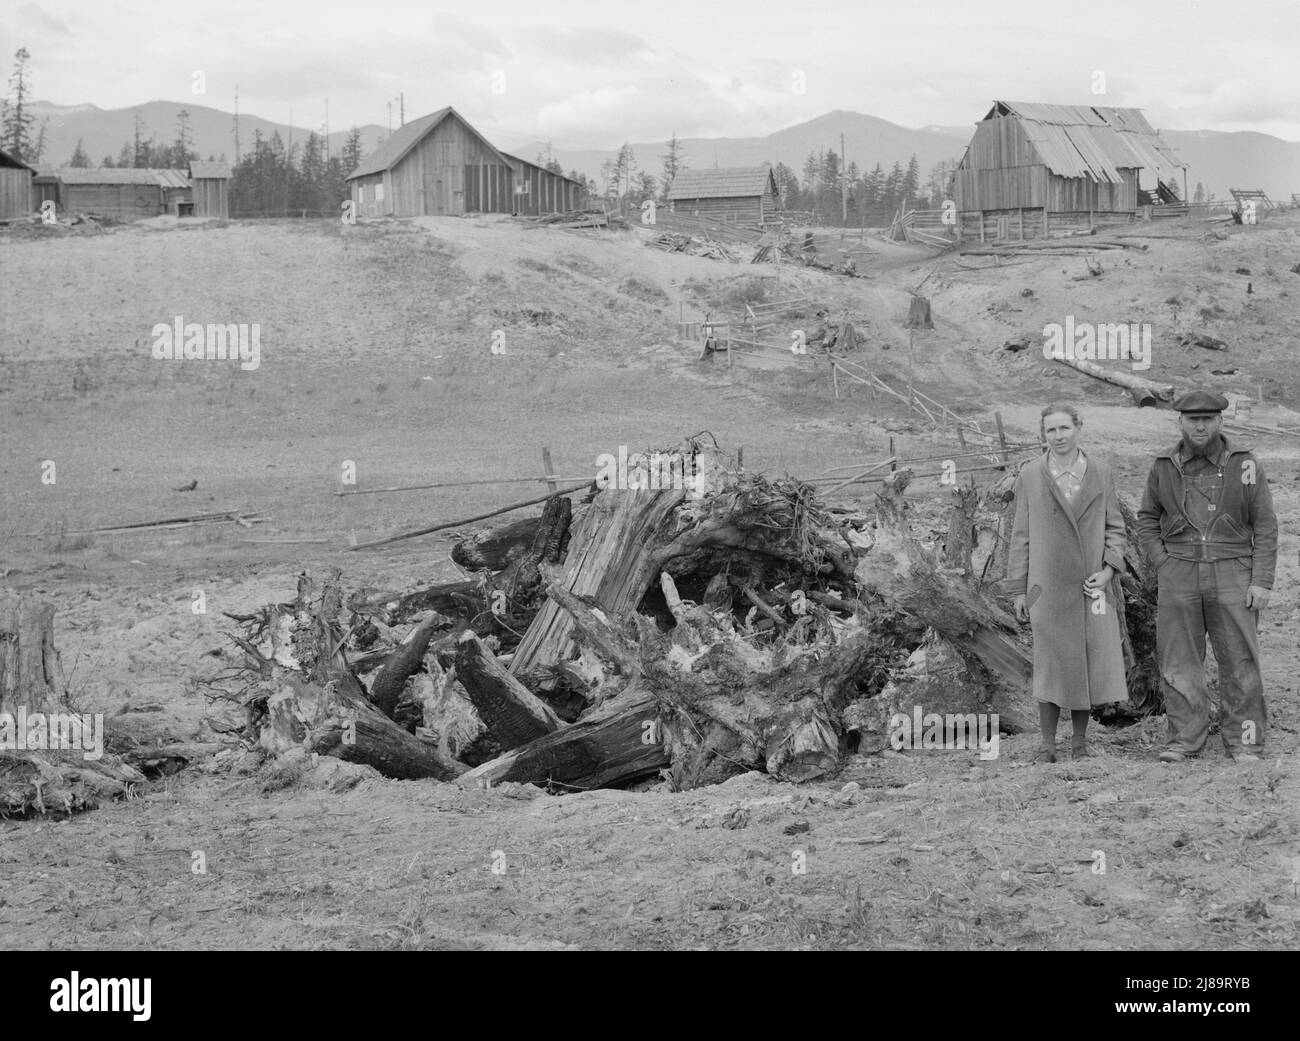 [Untitled, posiblemente relacionado con: La familia Unruf, el montón de tocones, y su granja parcialmente desarrollada. Condado de Boundary, Idaho]. Foto de stock